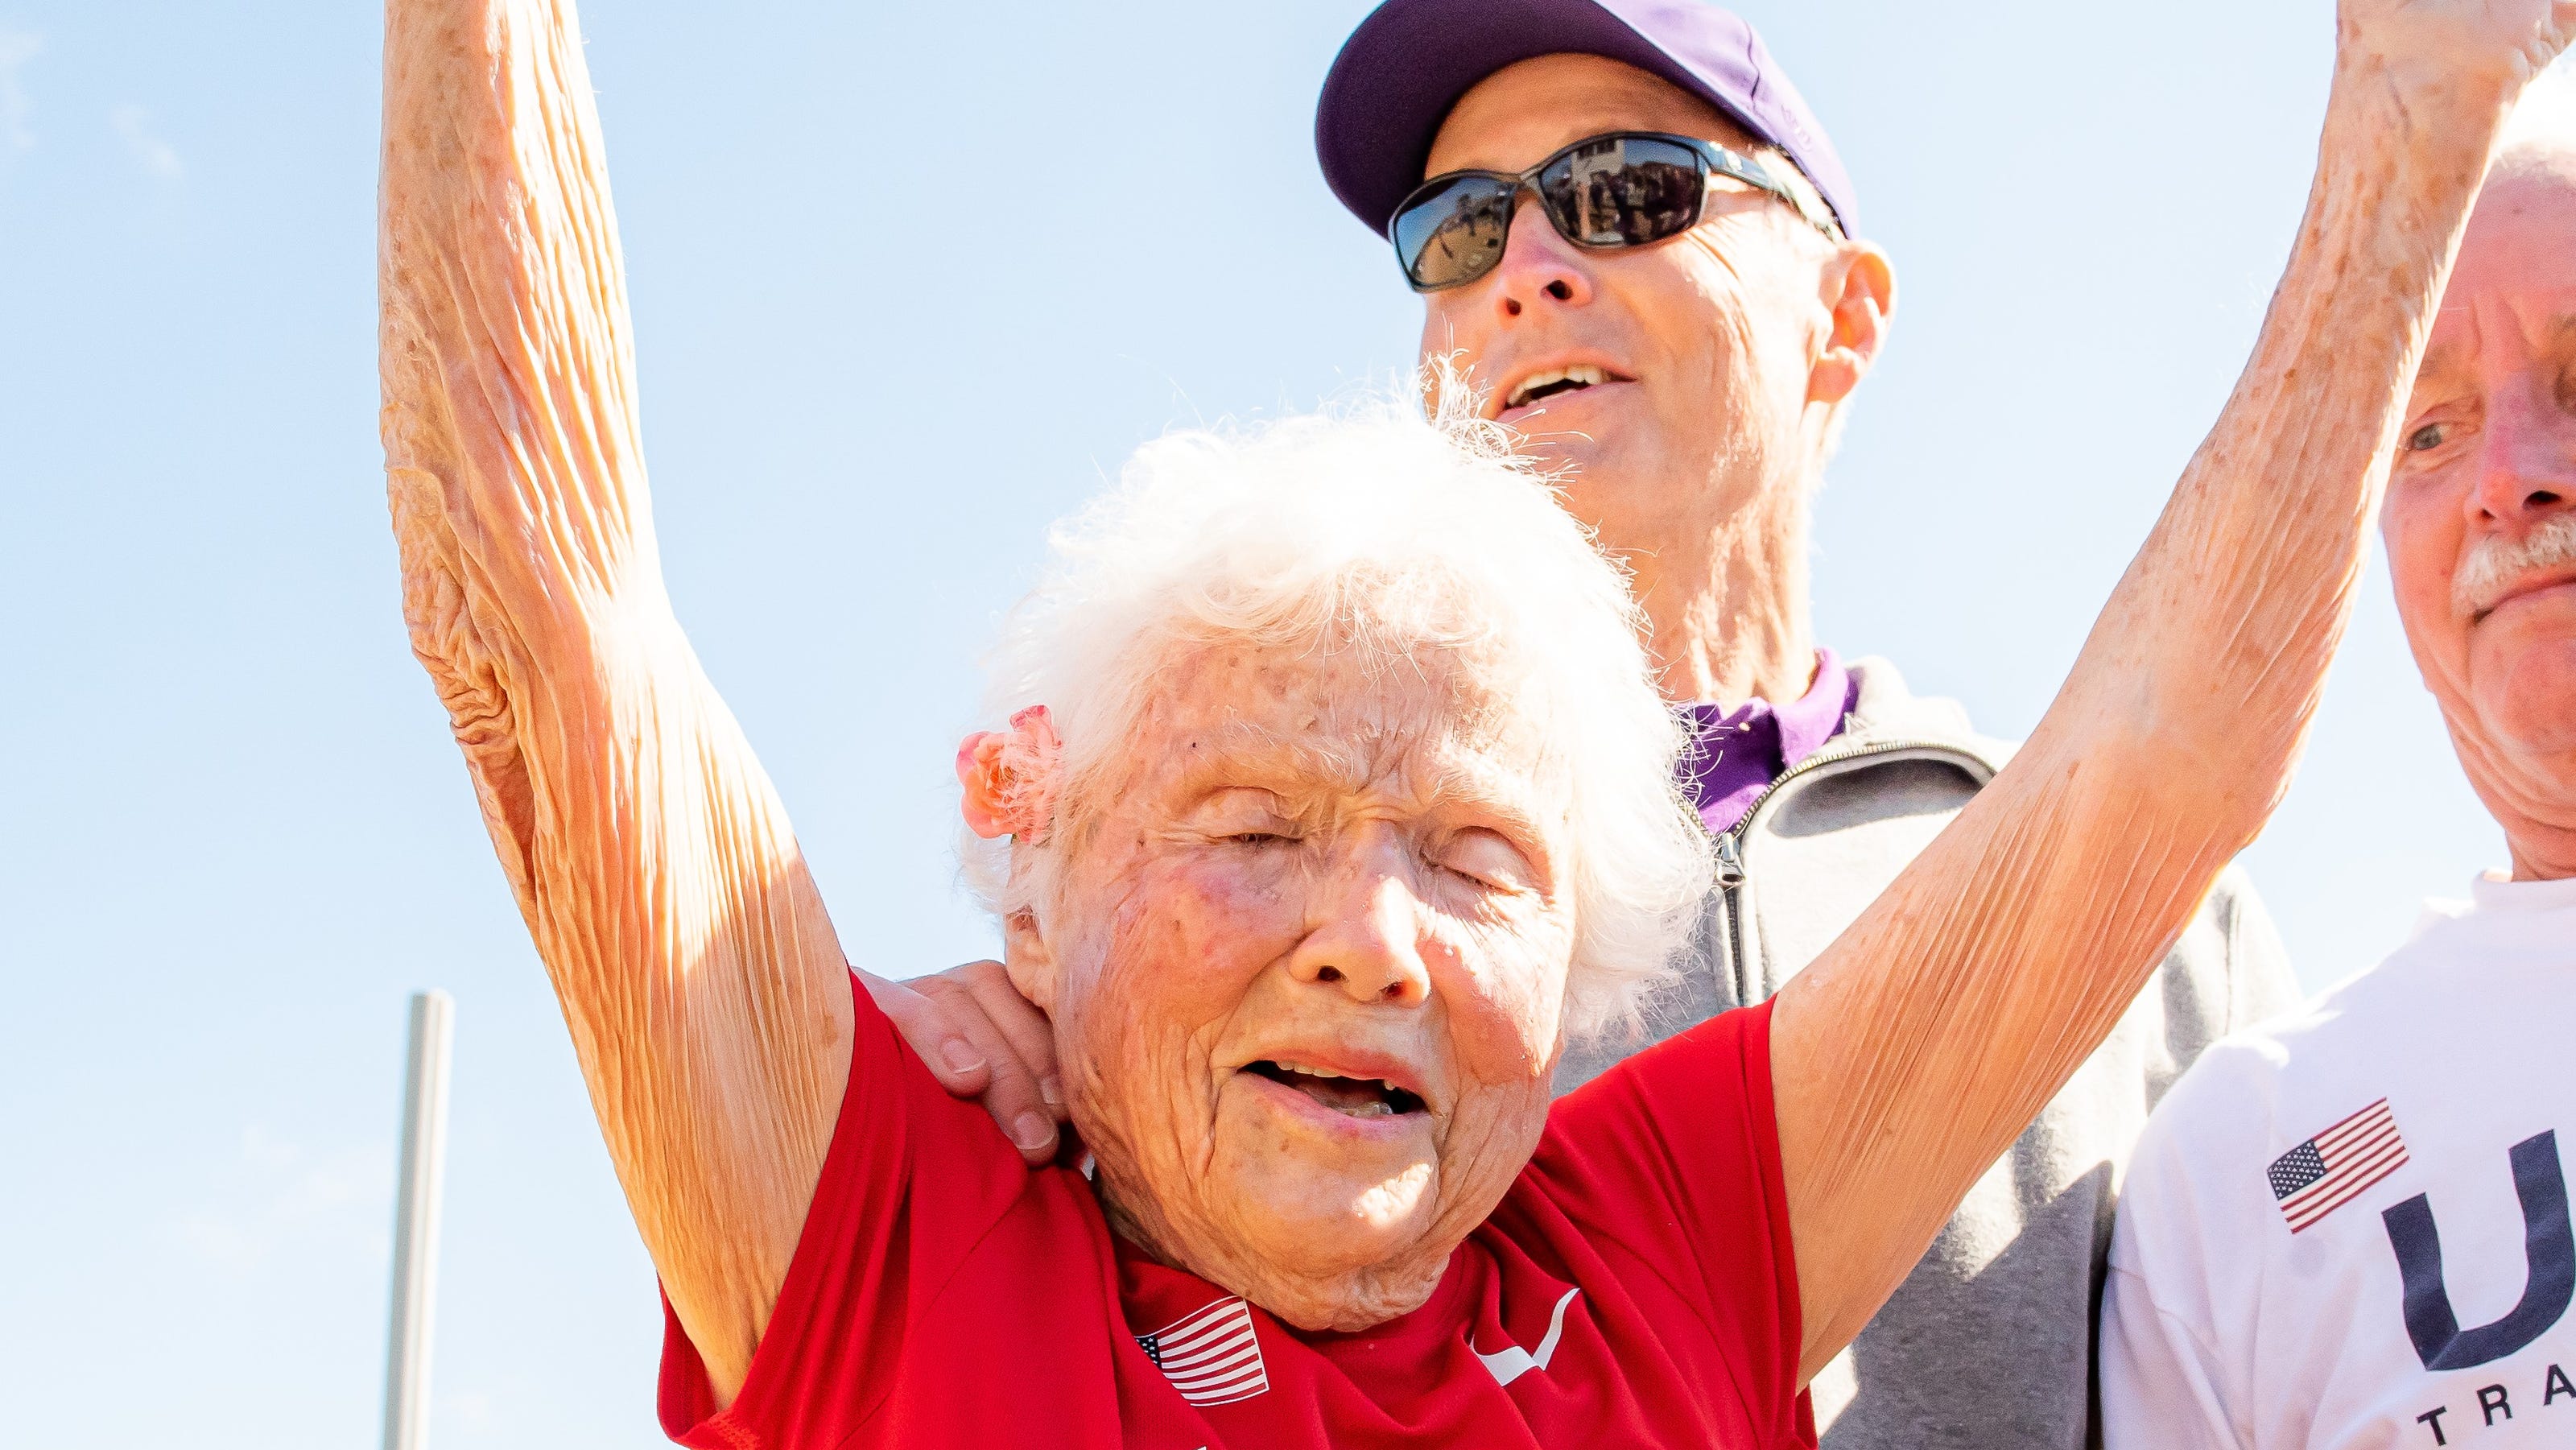 105yearold woman sets world record at Louisiana Senior Games